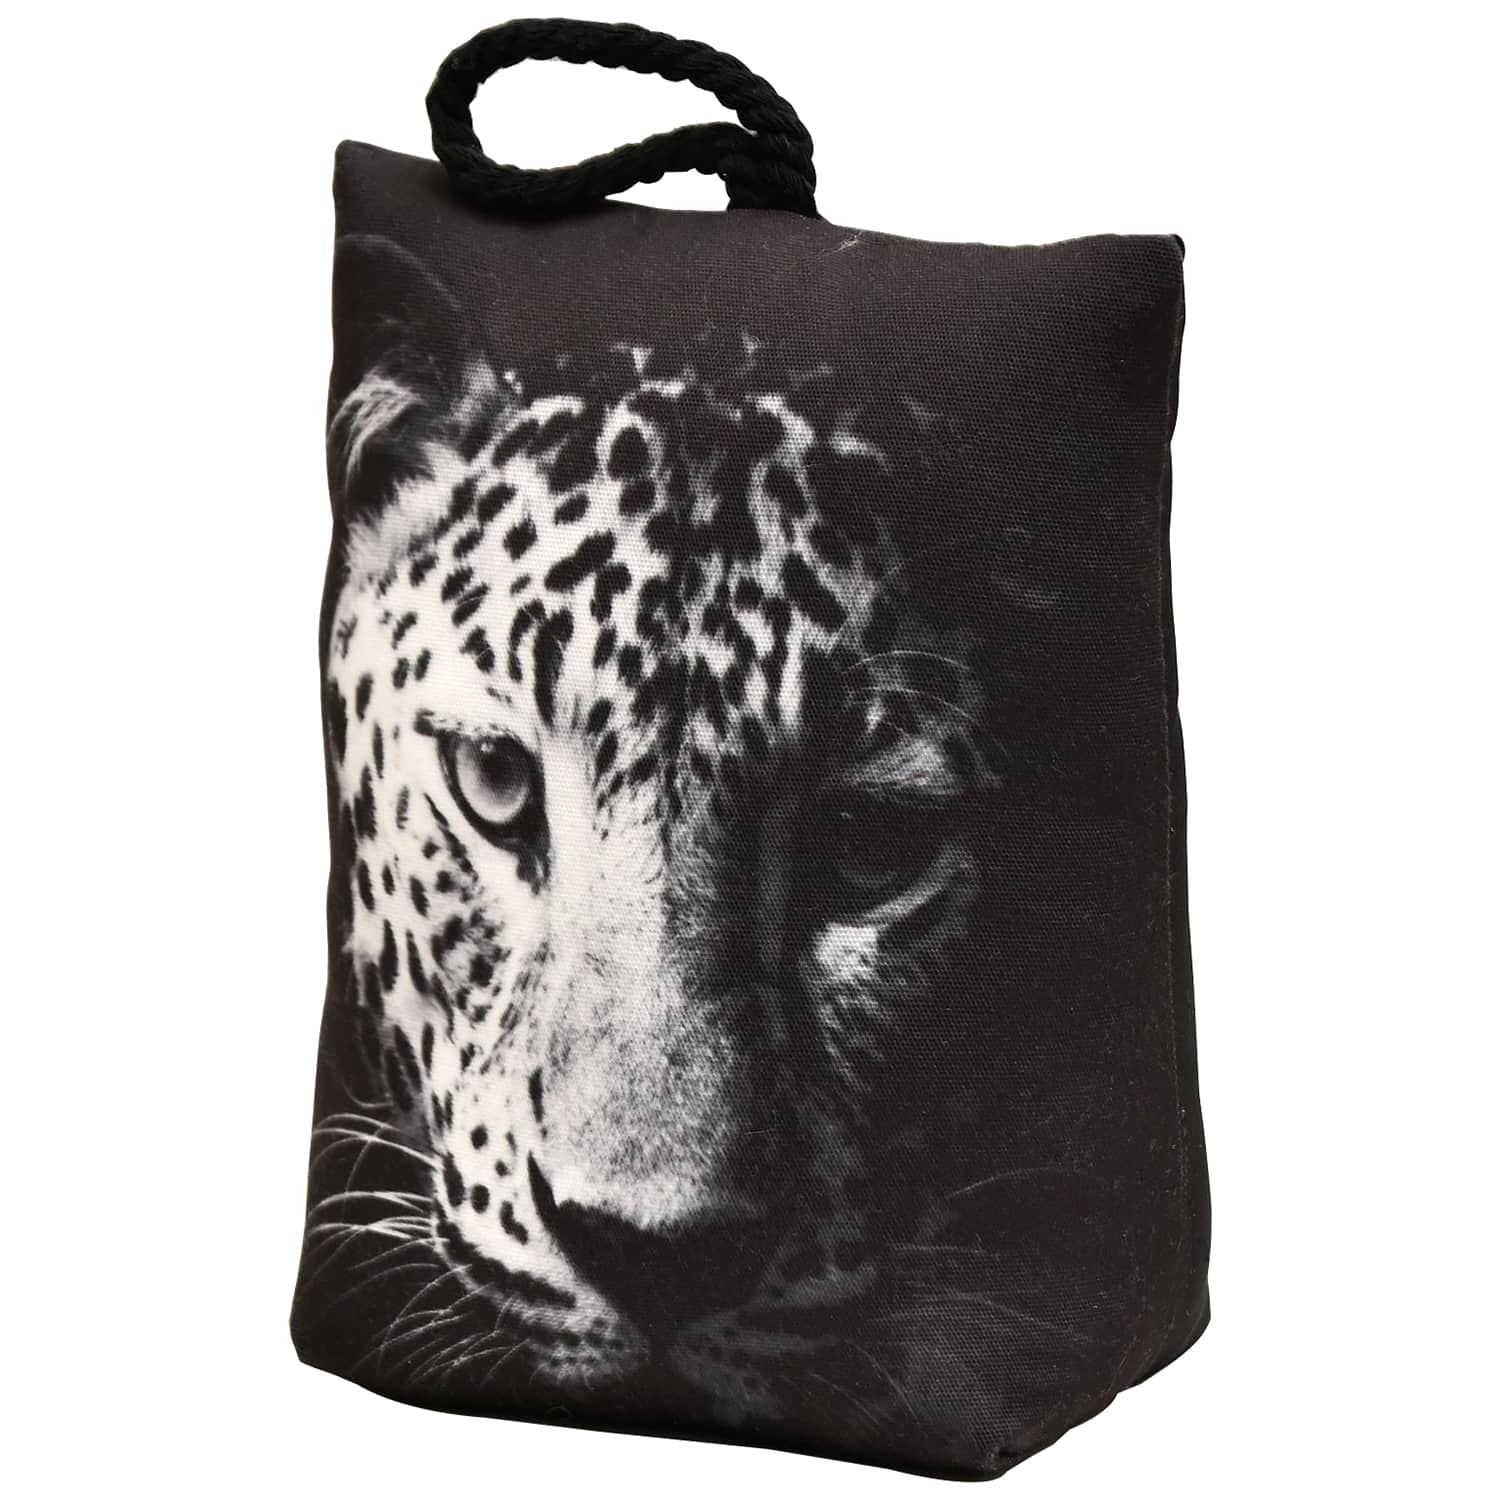 Leopard Printed Fabric Bag Door Stop Interior Weighted Floor 2.2 lbs